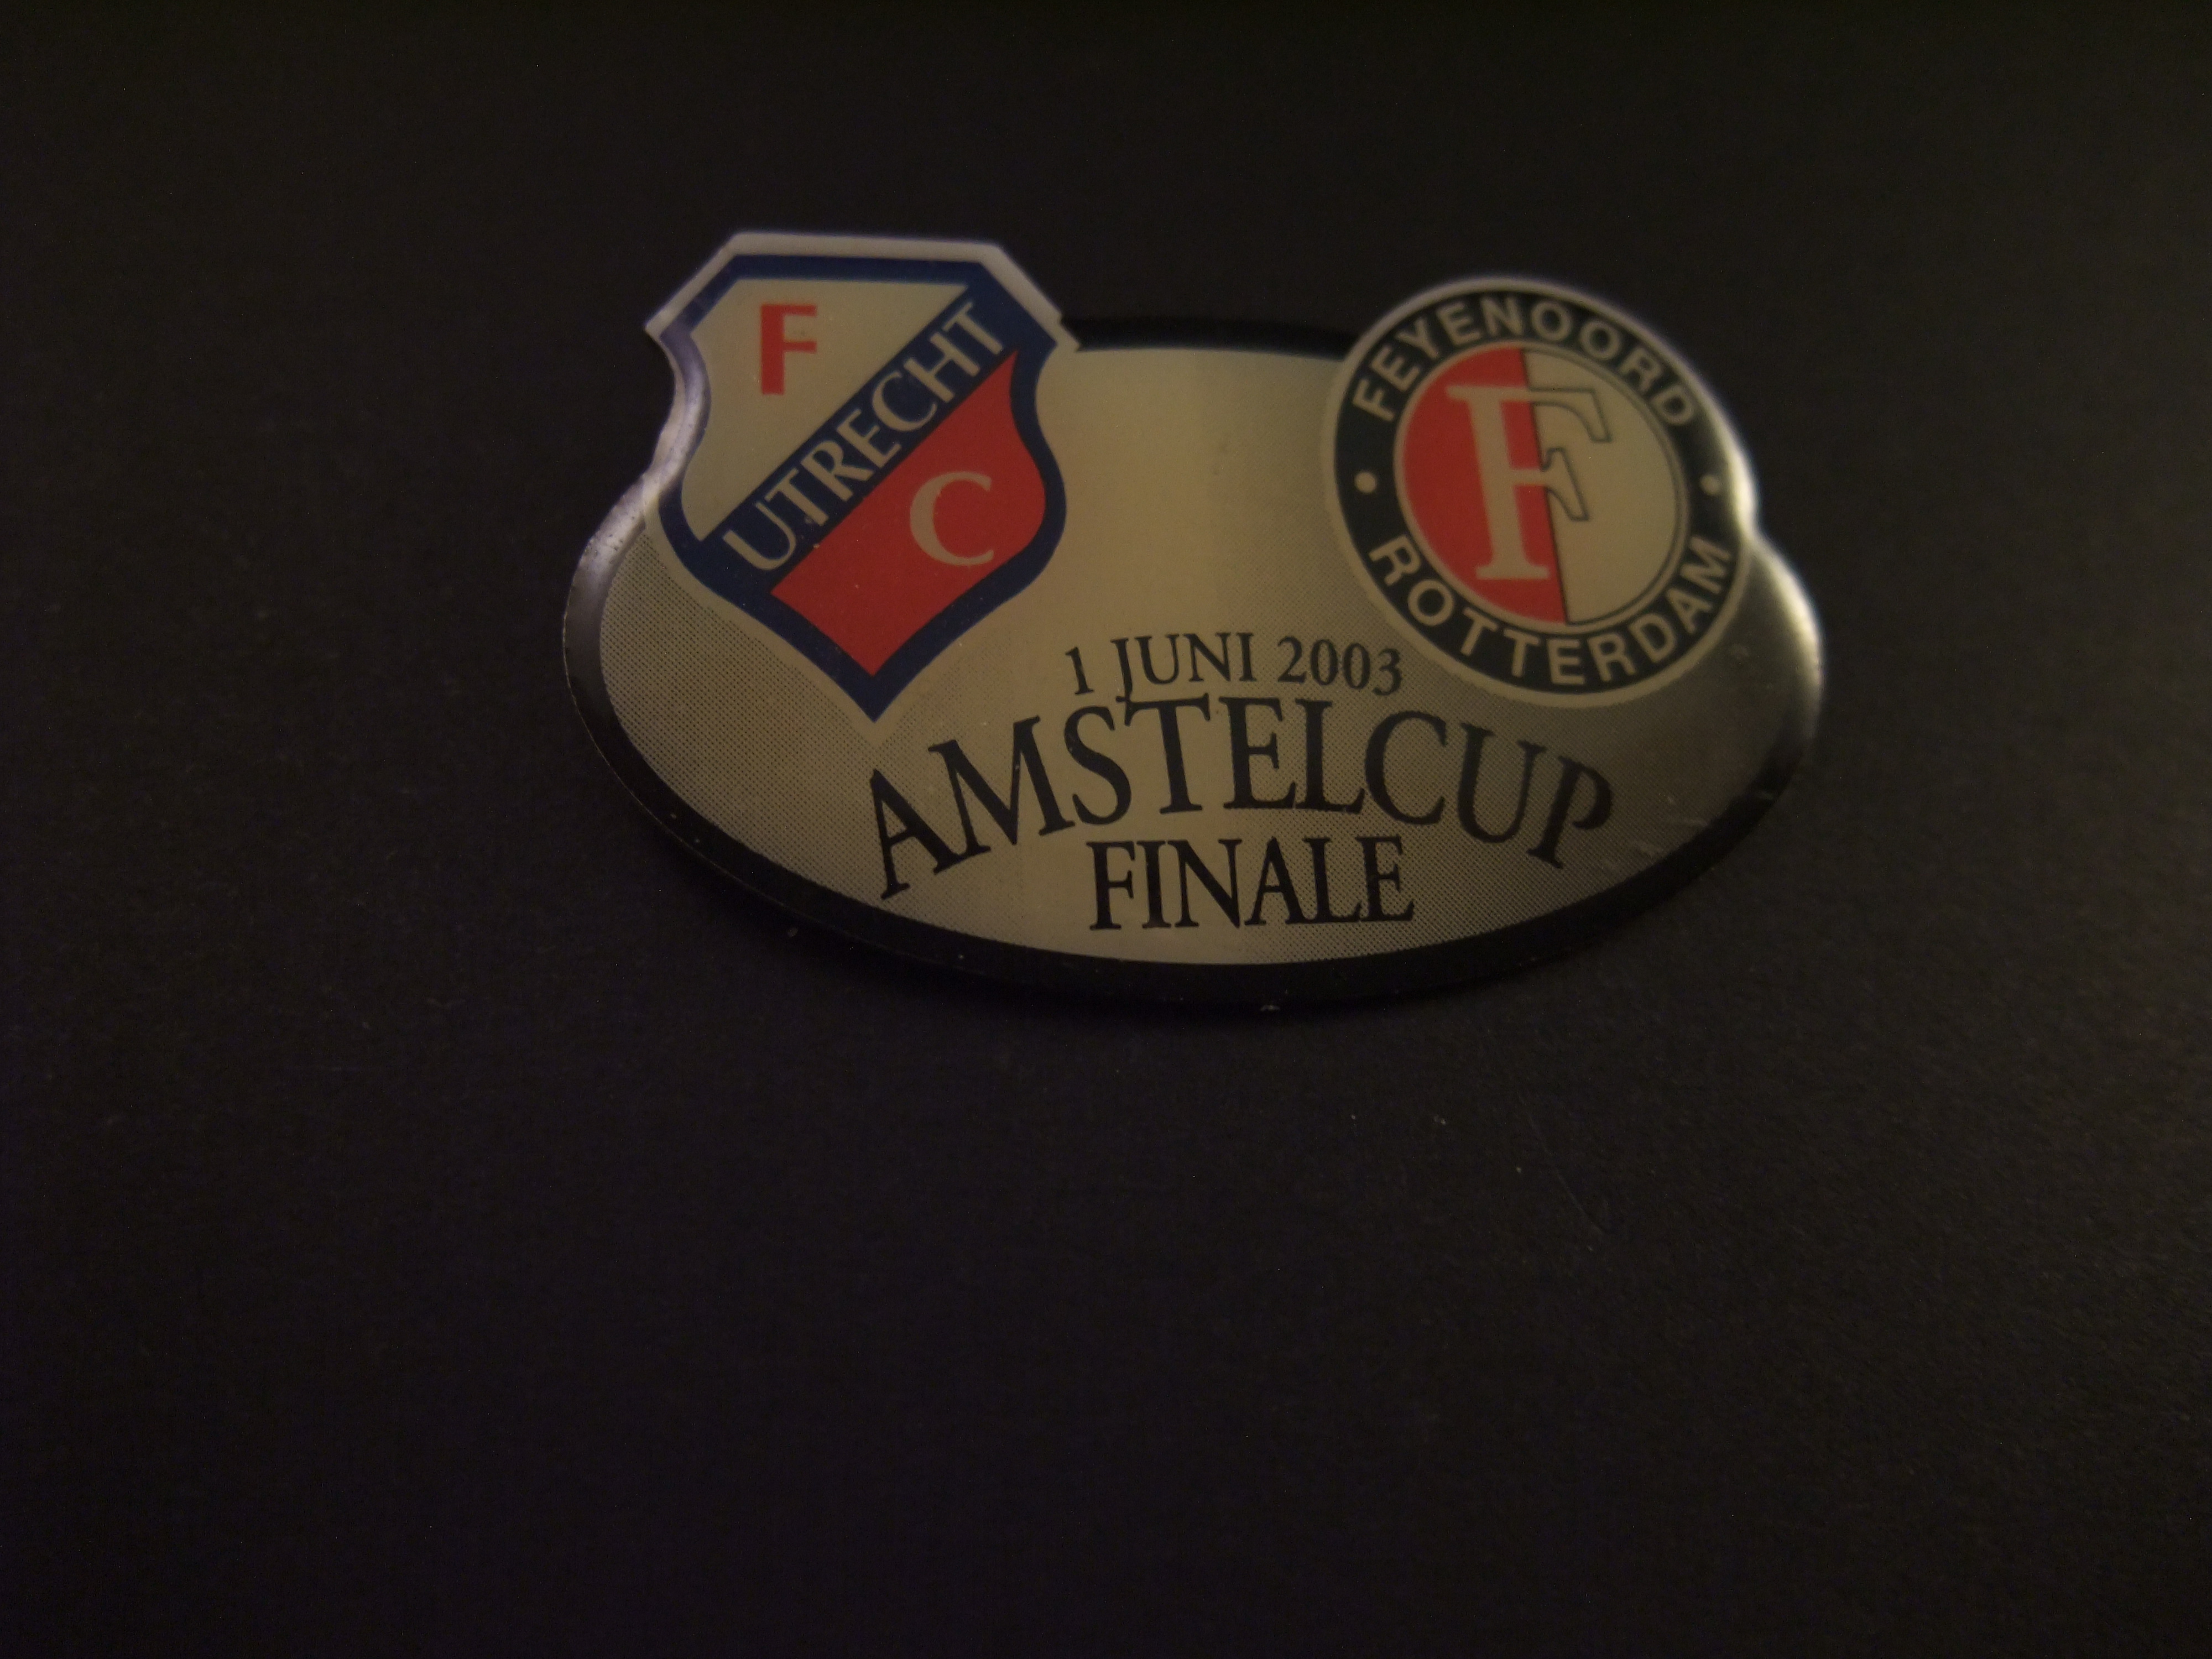 FC Utrecht- Feyenoord Amstel cup finale 2003